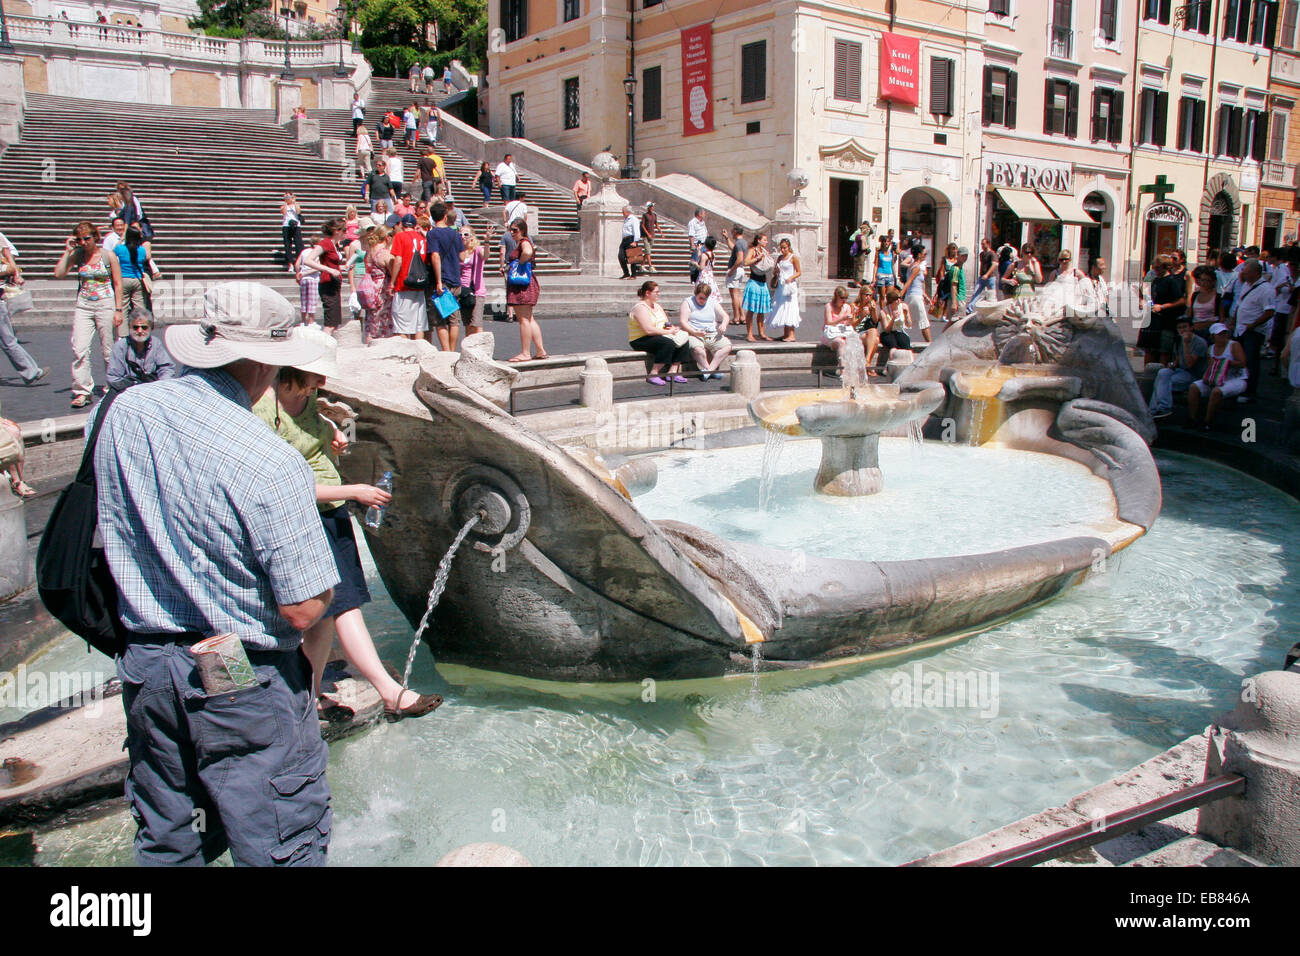 Fontana della Barcaccia Spanish Steps, Piazza di Spagna, Rome Stock Photo